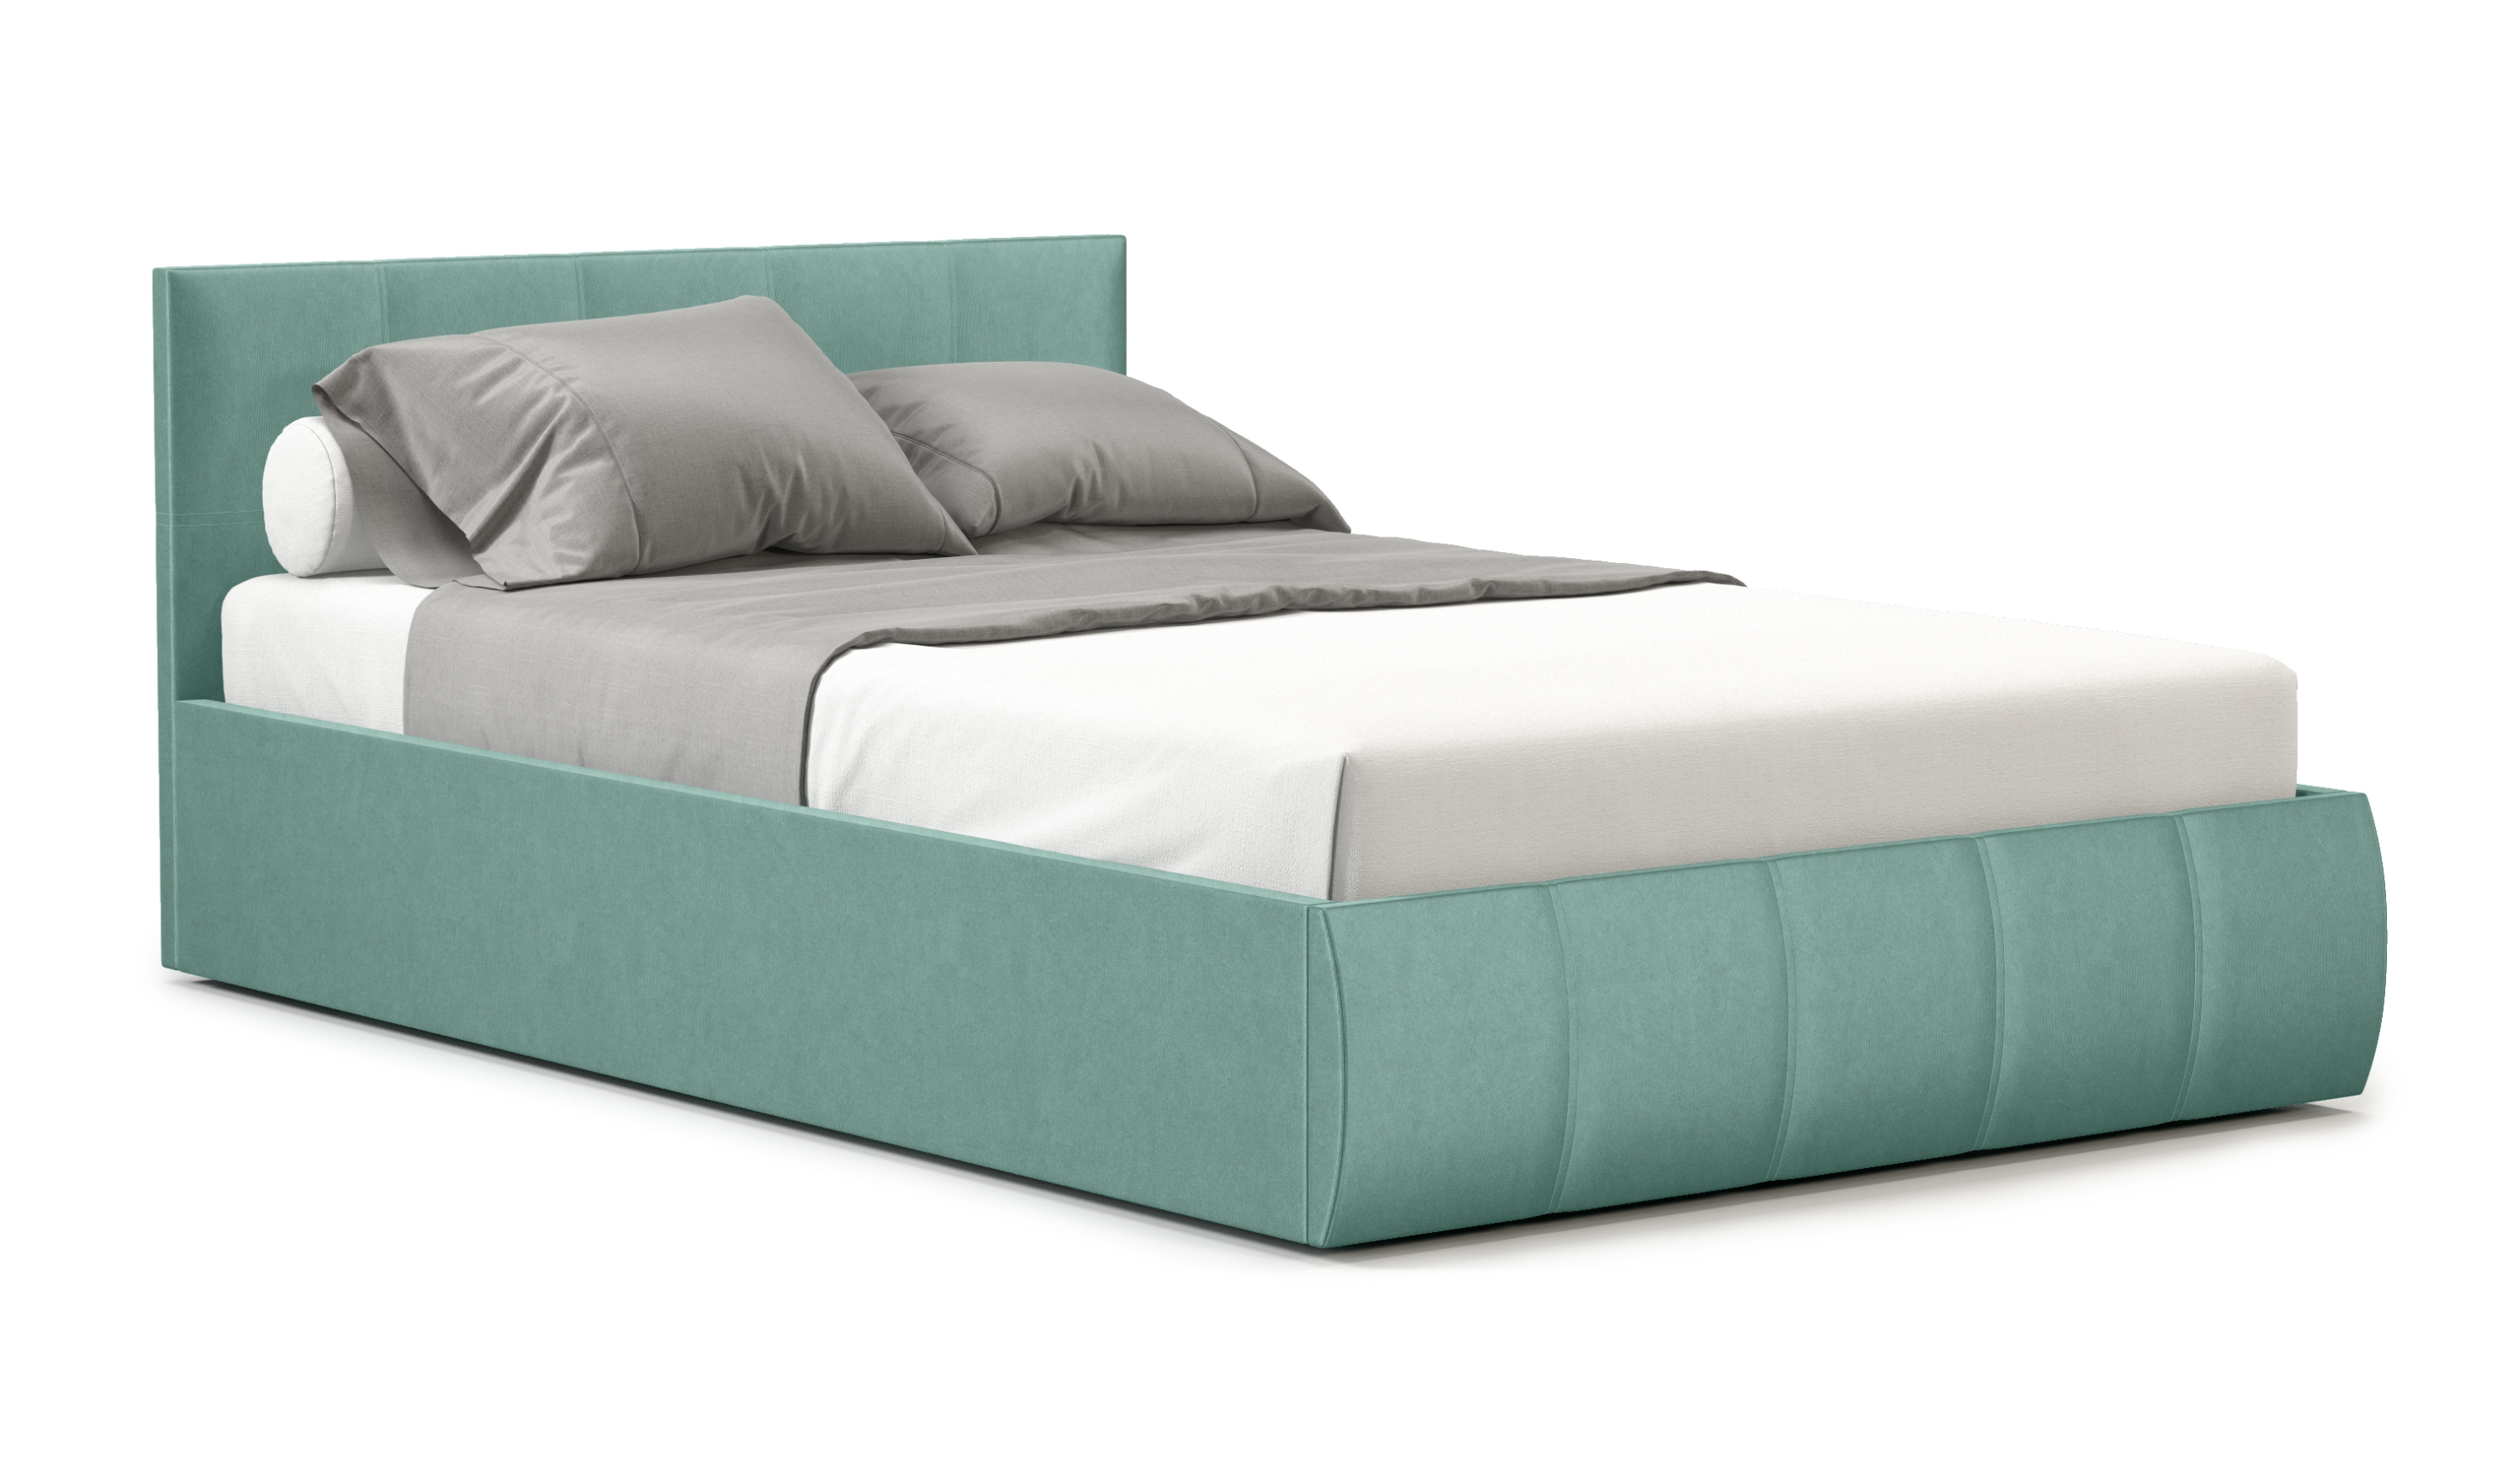 Мягкая кровать Верона 140*200 (подъемник), цвет bingo mint - фото 4